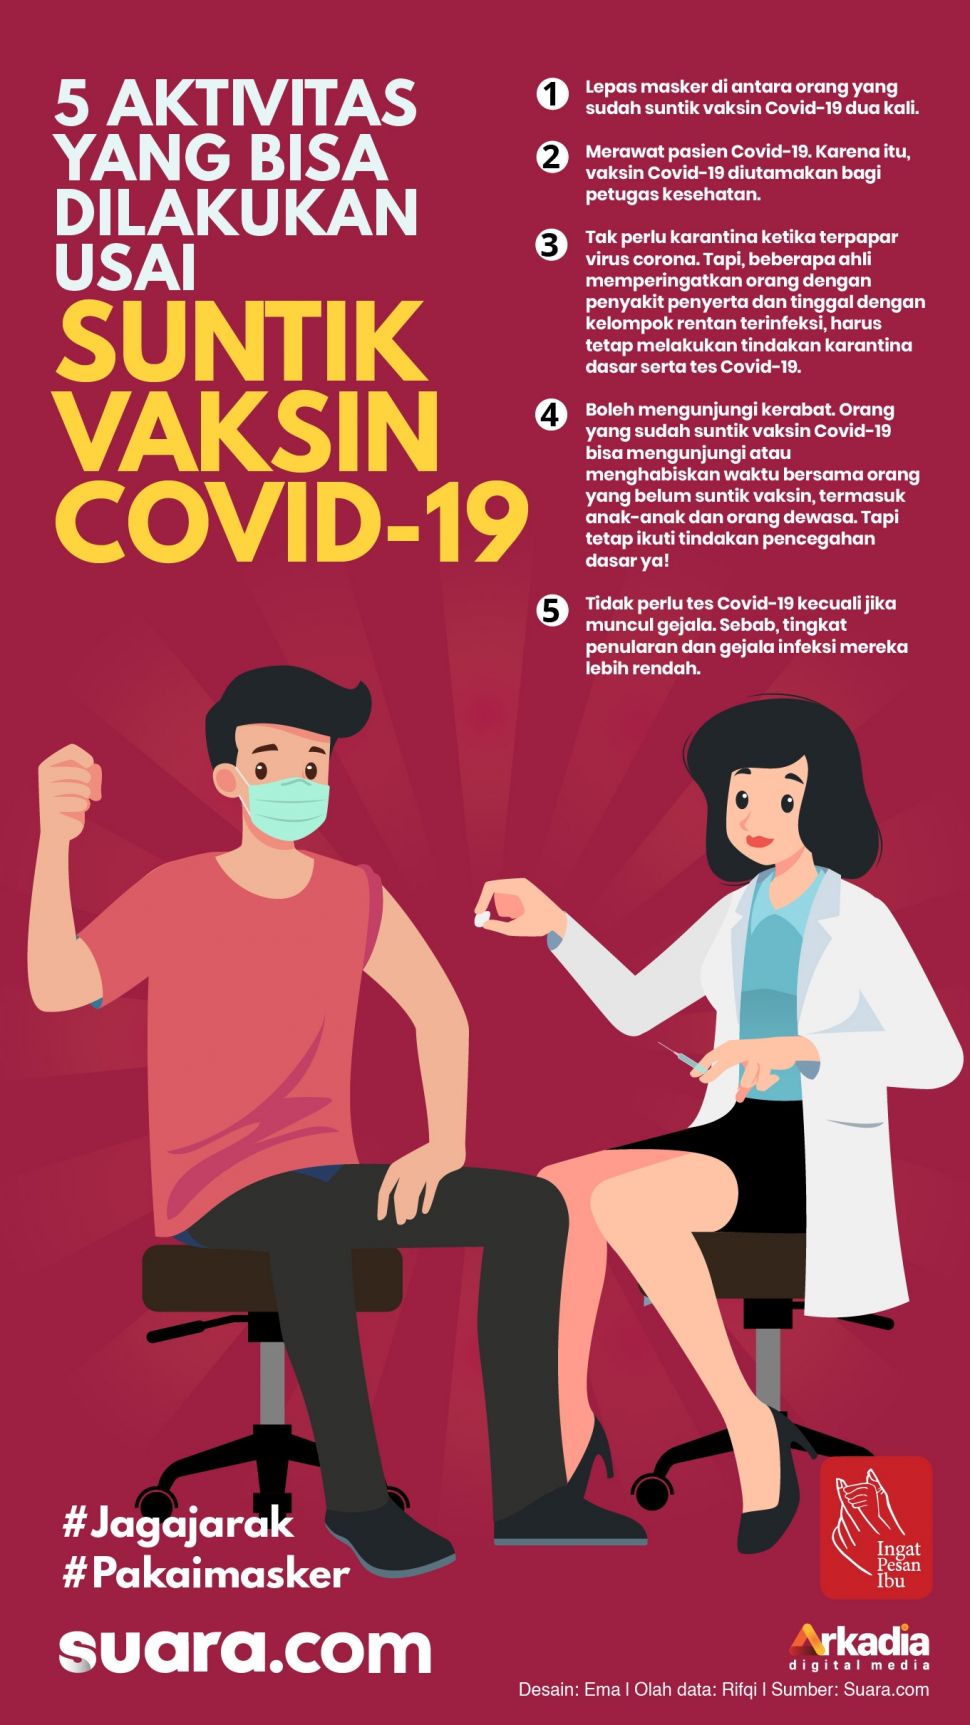 Menurut pedoman dari Pusat Pengendalian dan Pencegahan Penyakit (CDC), orang yang suntik vaksin Covid-19 bisa melakukan beberapa aktivitas tertentu yang sebelumnya dibatasi. 